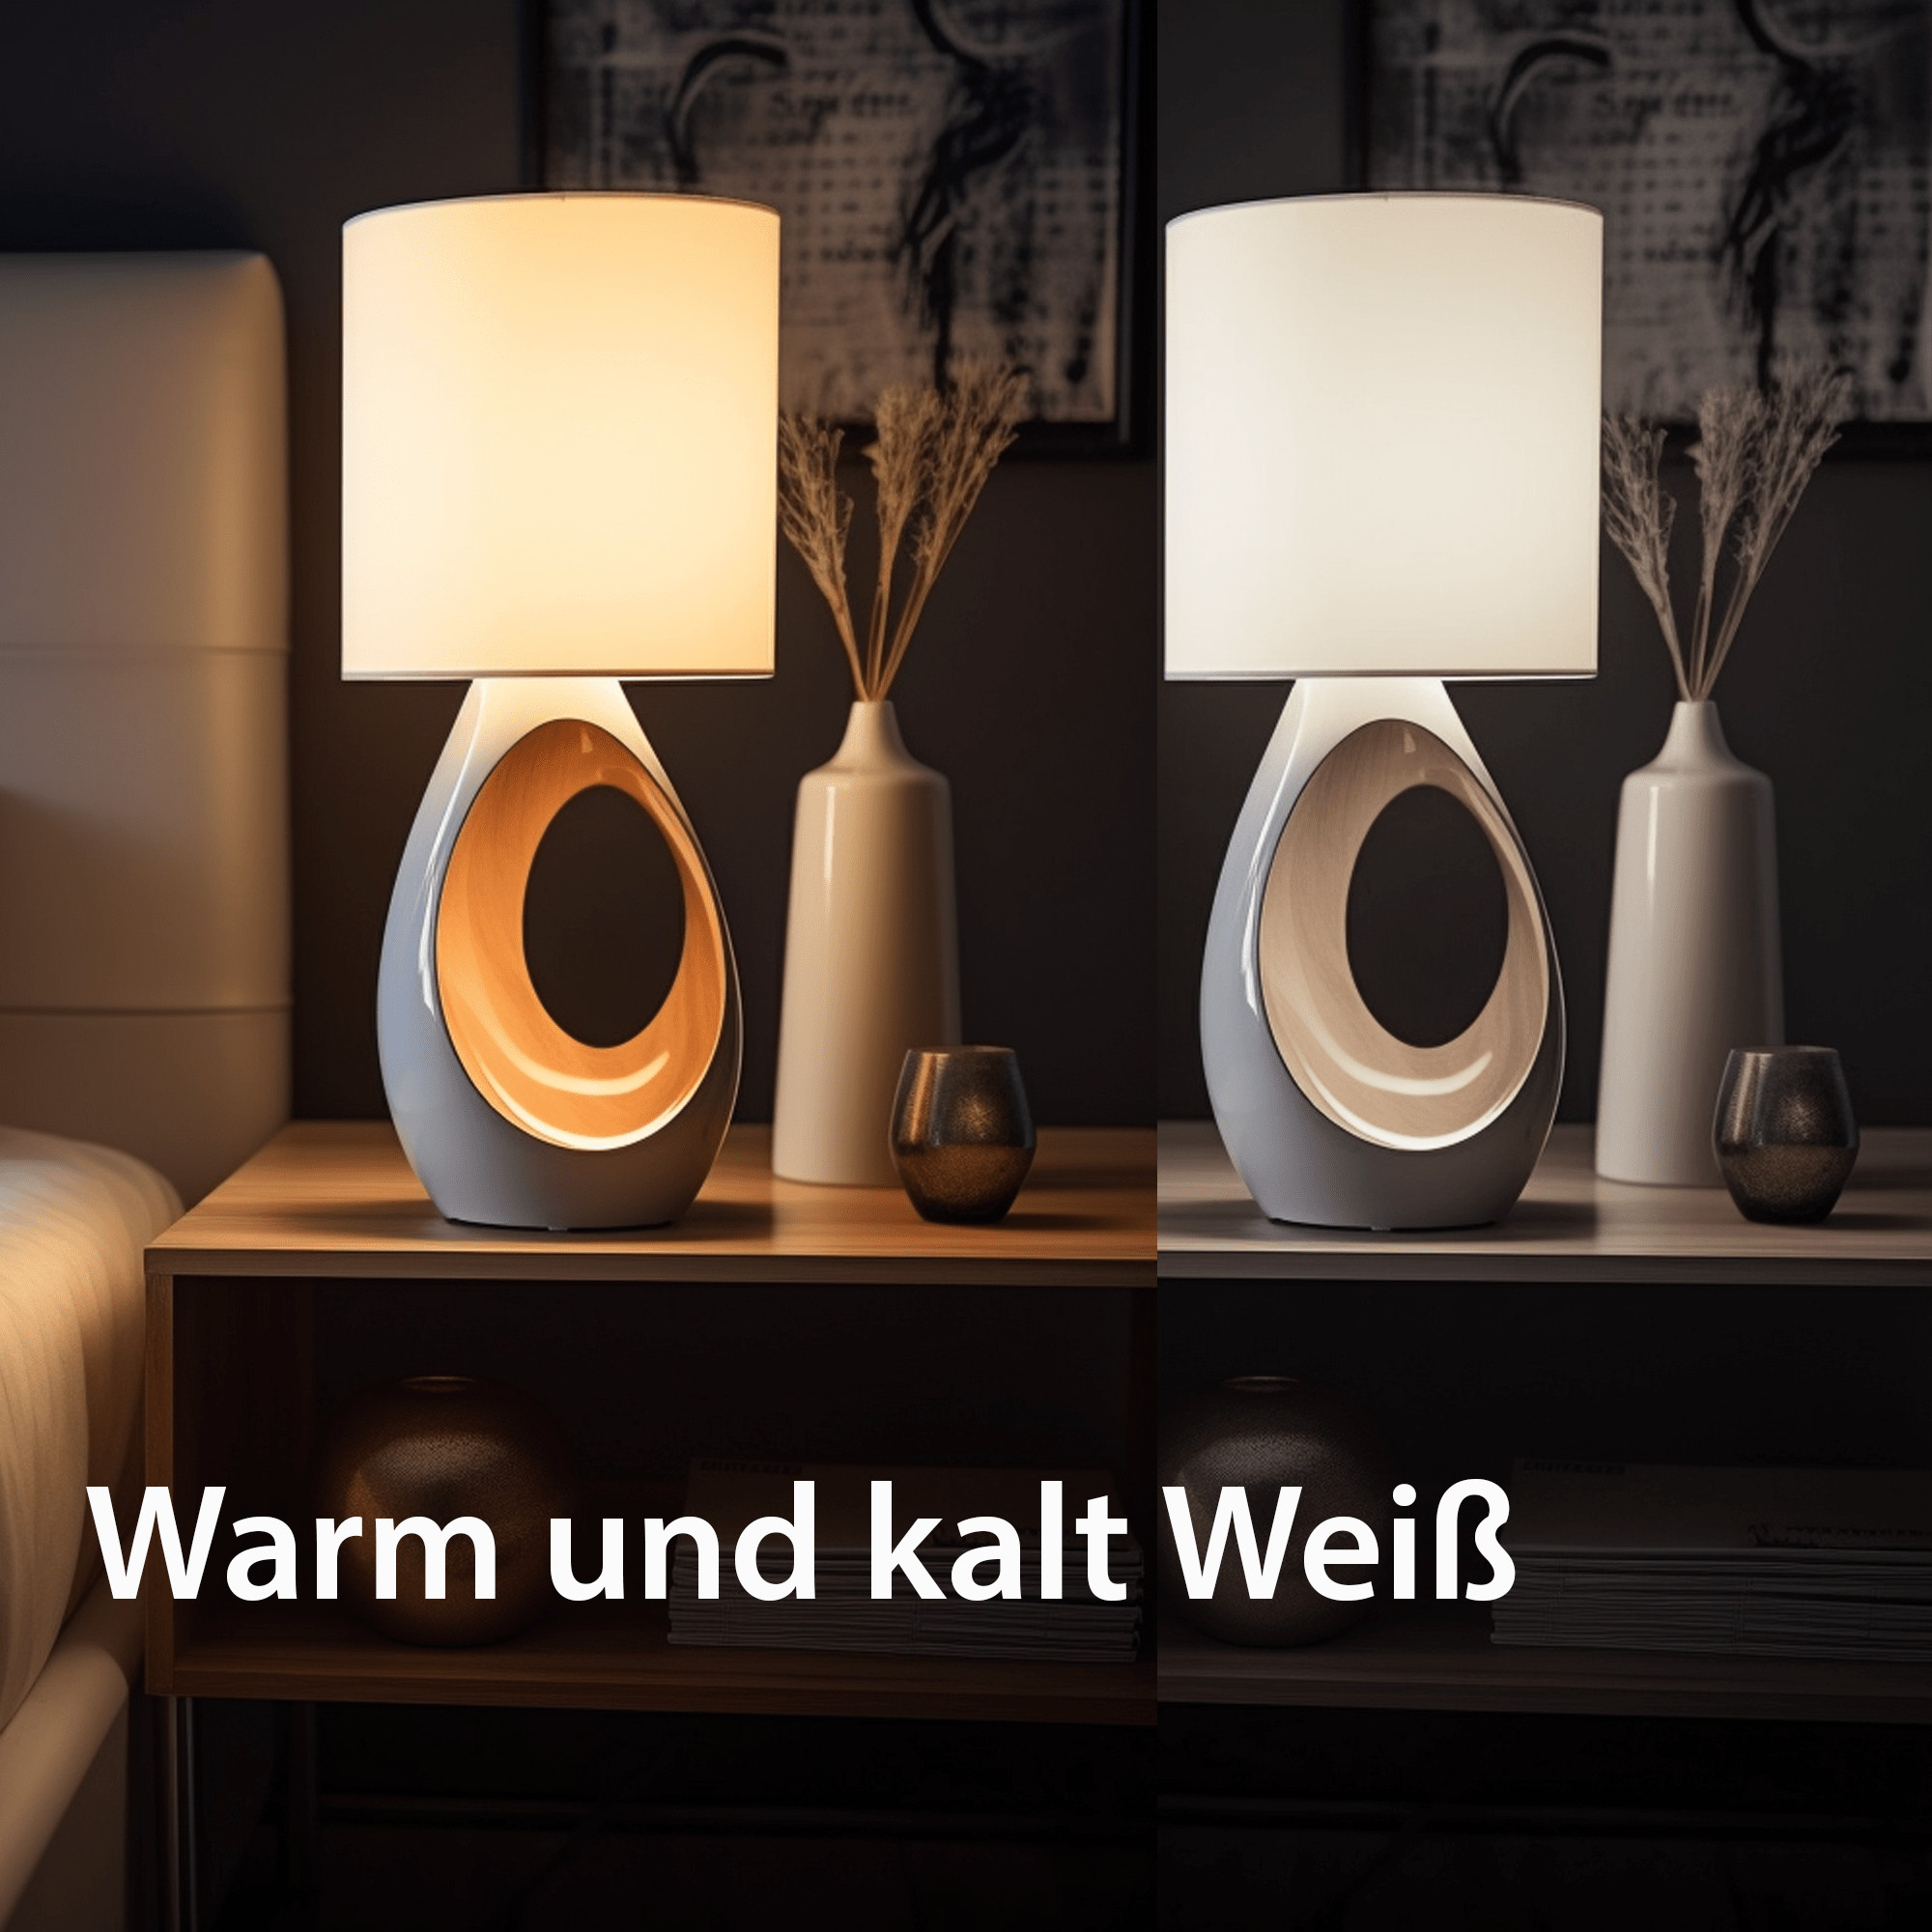 XCOAST E27 LED-Lampe - Nachhaltige Beleuchtung für Ihr Zuhause